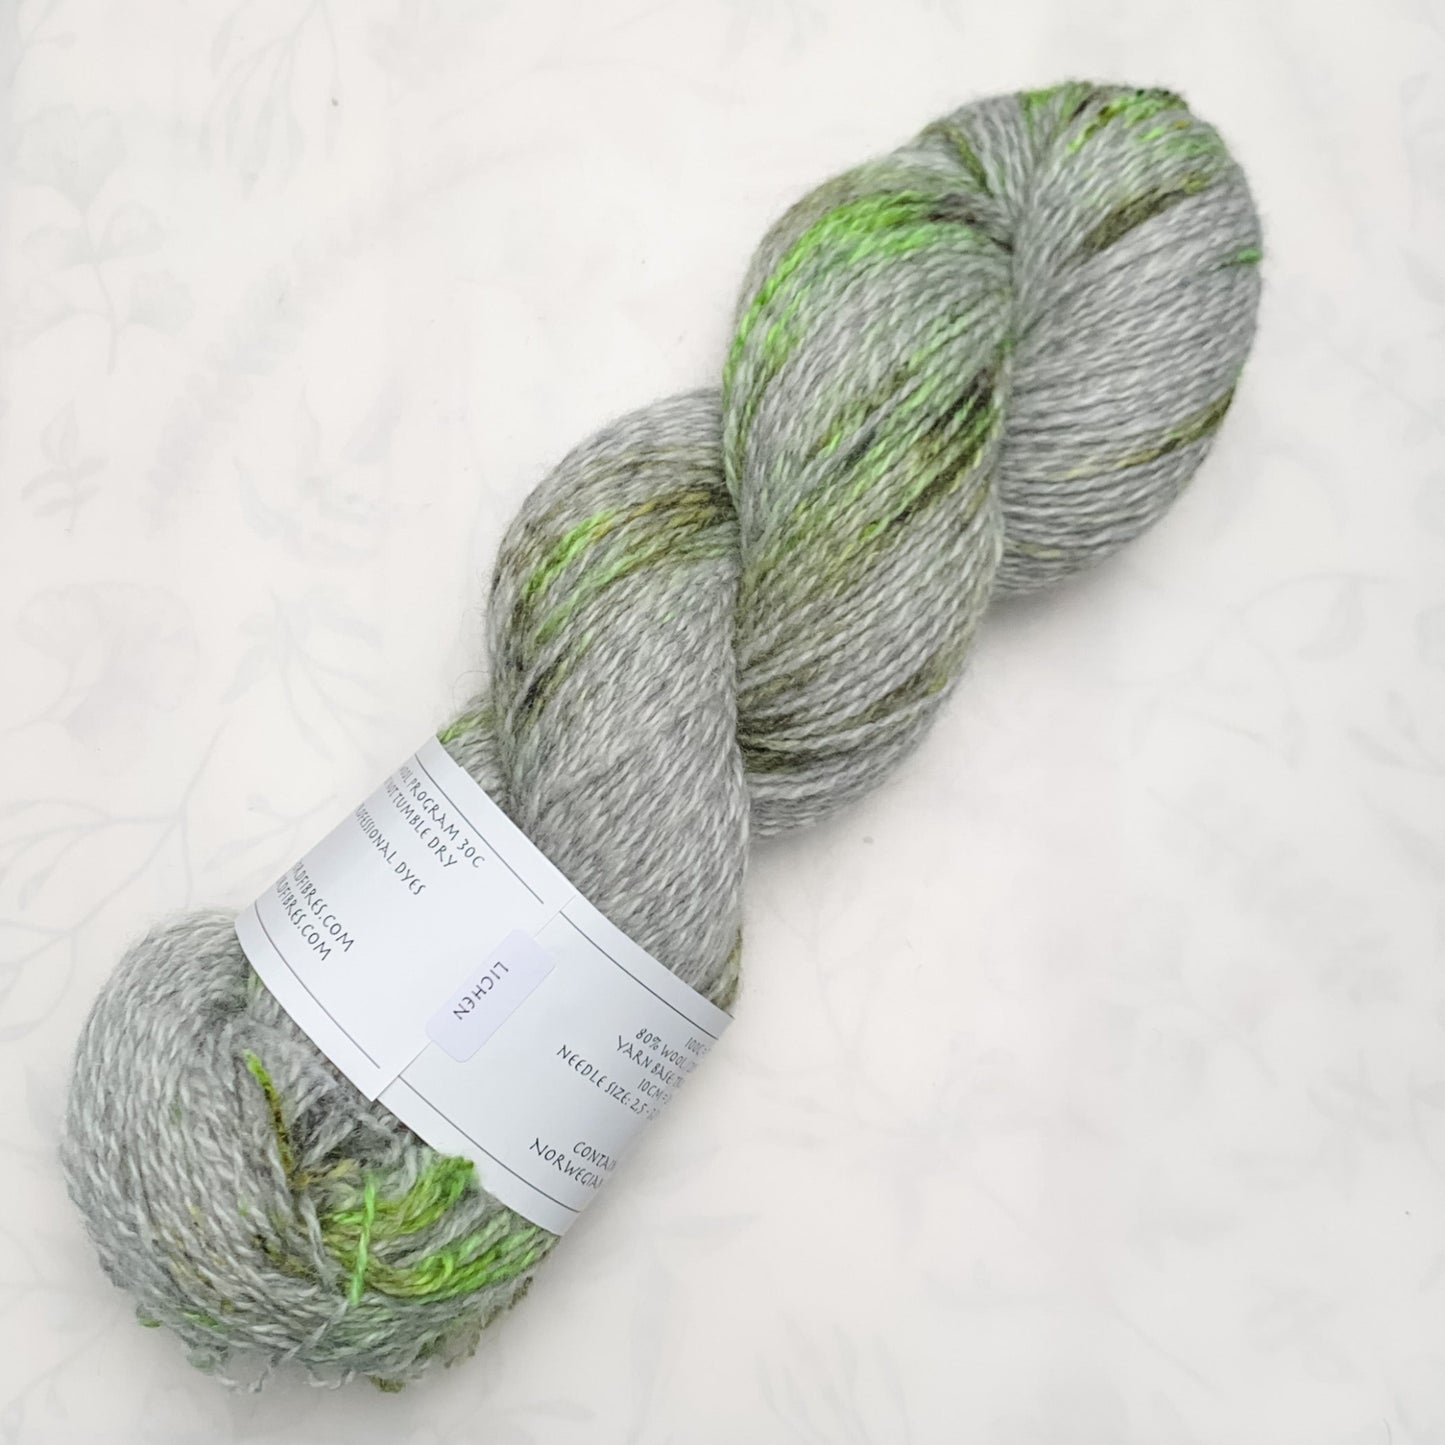 Lichen - Trollfjord sock - Hand Dyed Yarn - Variegated Yarn